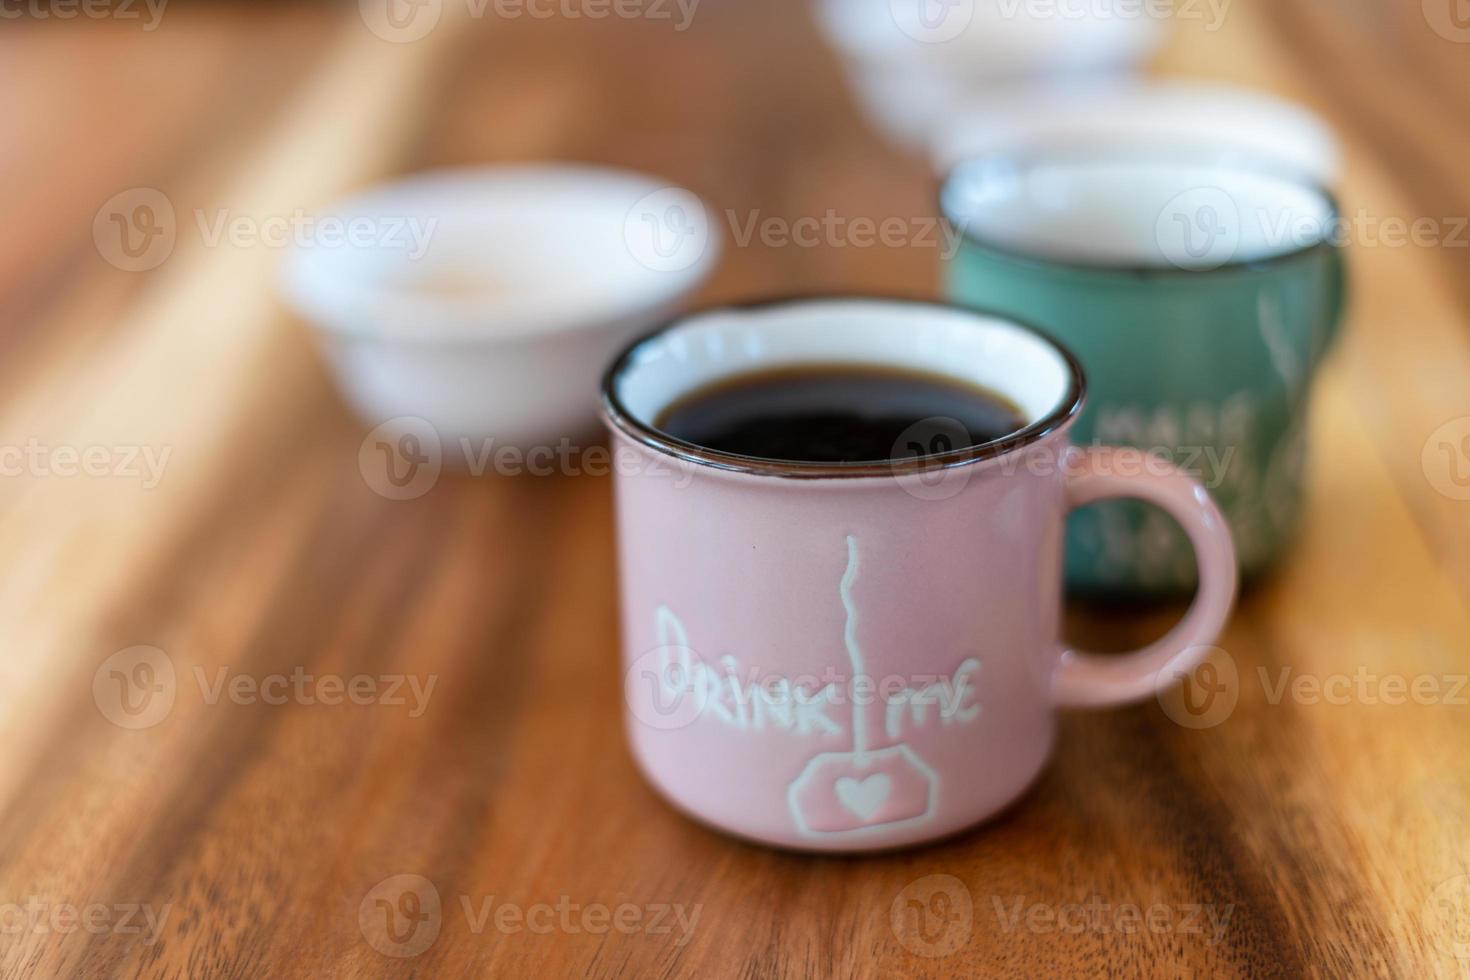 kopp bryggt svart kaffe på träbordet foto